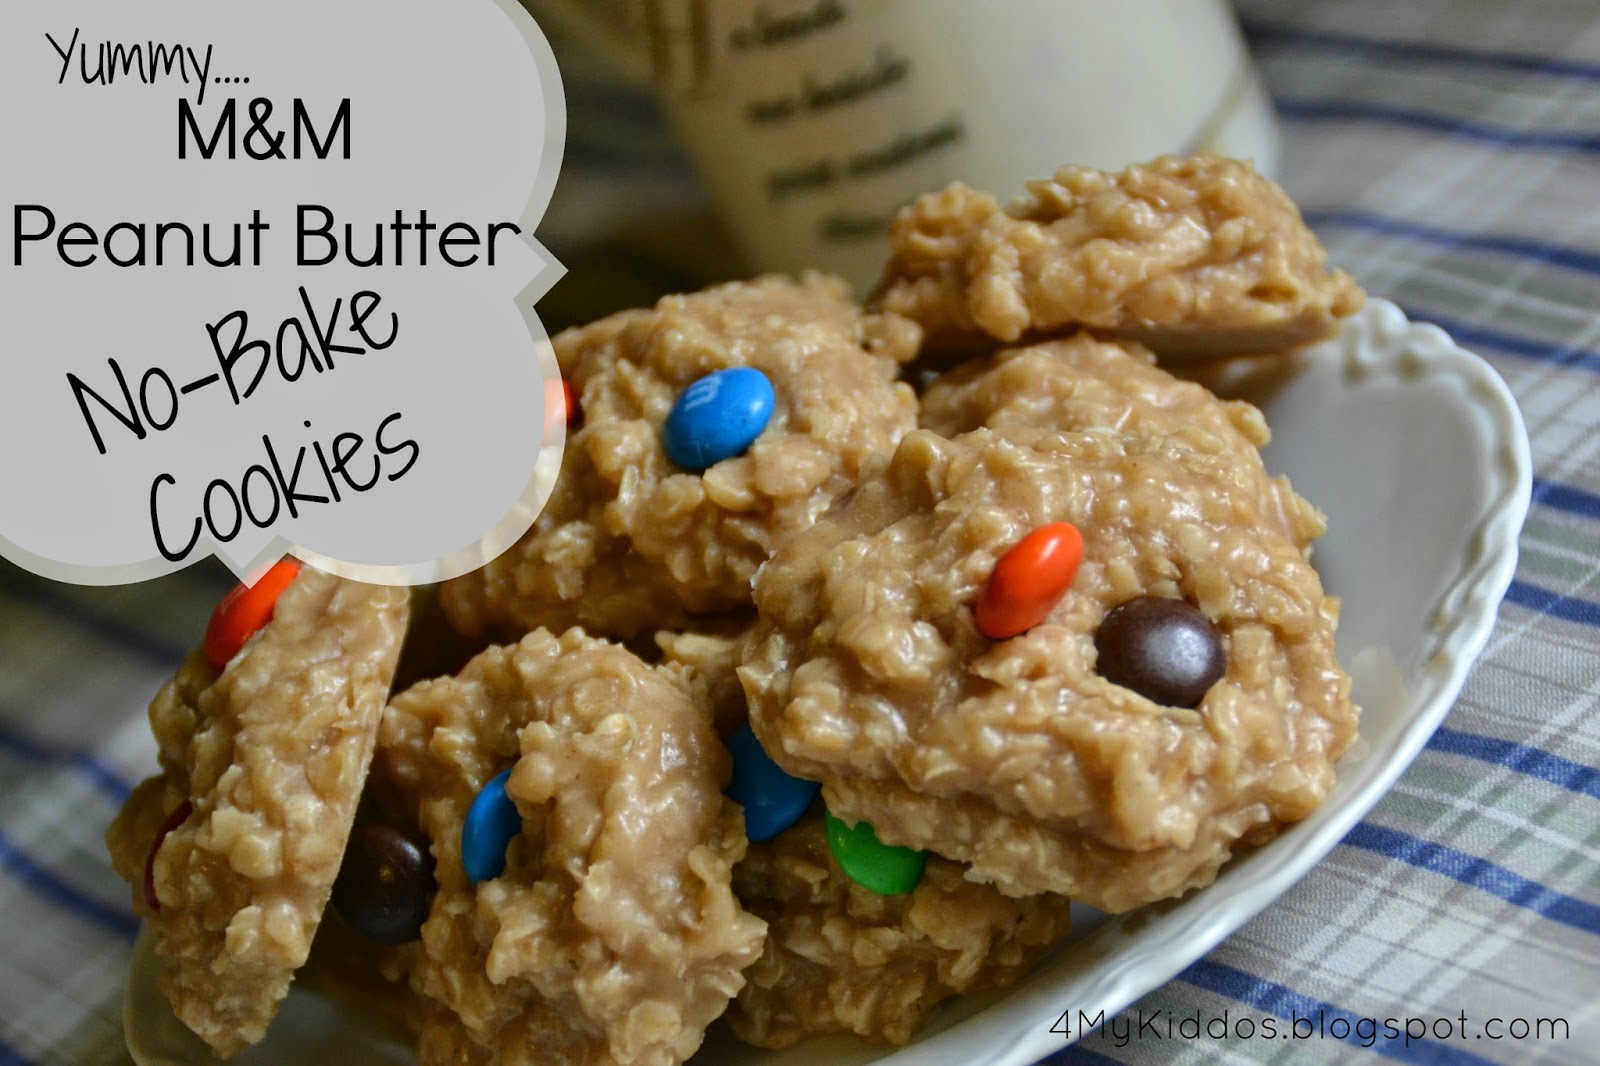 http://4mykiddos.blogspot.com/2014/07/m-peanut-butter-no-bake-cookies.html